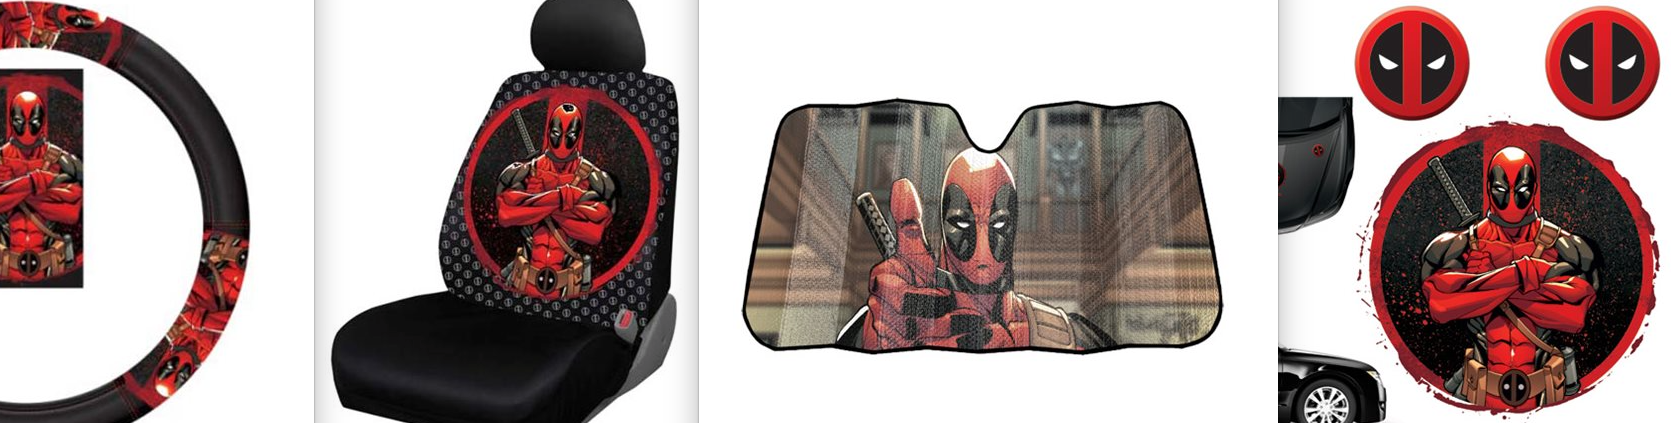 2. Deadpool Car accessories (Weird Deadpool Merch)